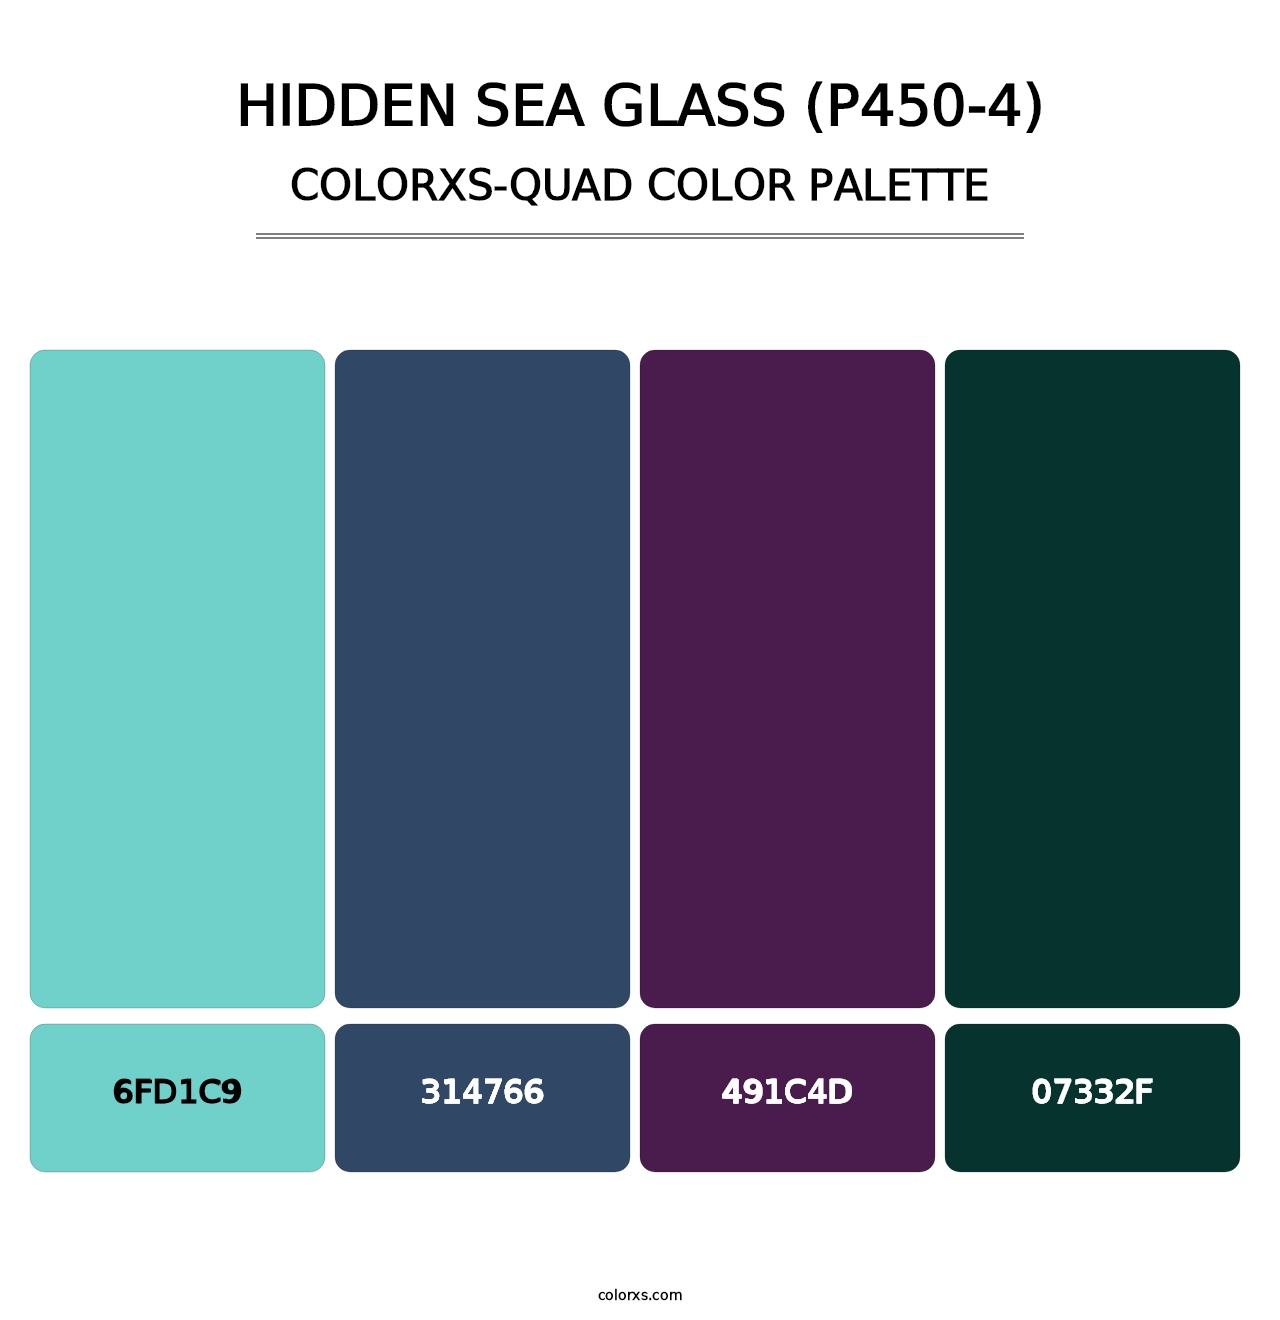 Hidden Sea Glass (P450-4) - Colorxs Quad Palette